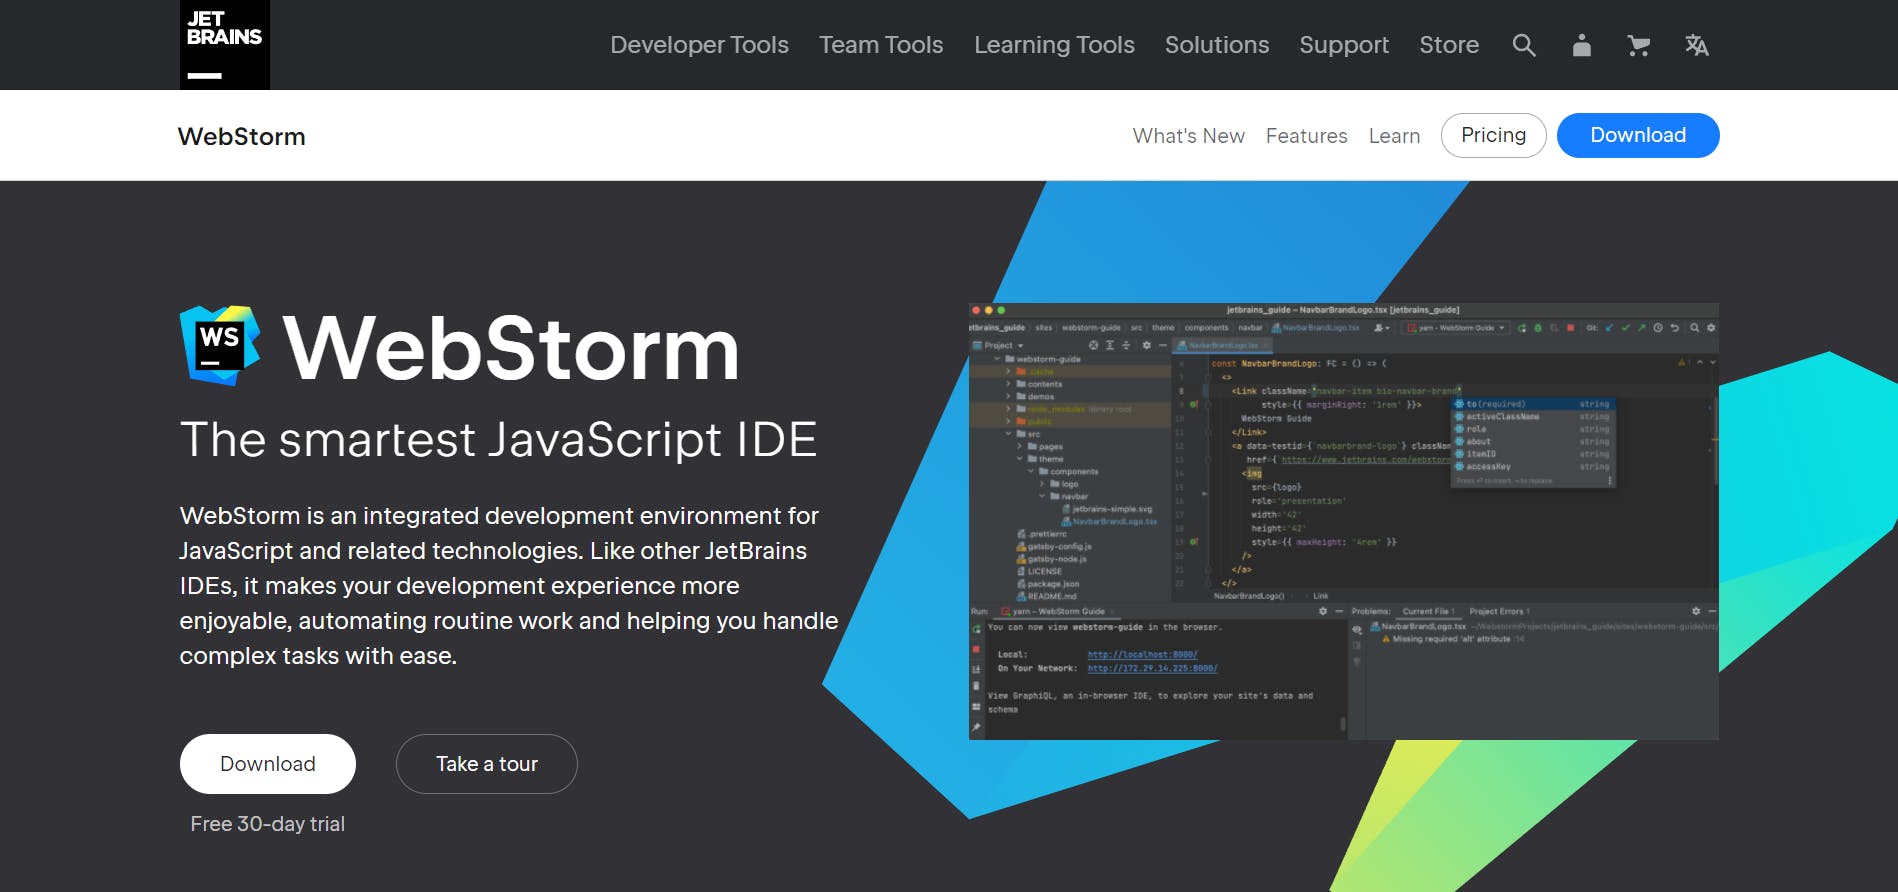 WebStorm_ The Smartest JavaScript IDE, by JetBrains.png